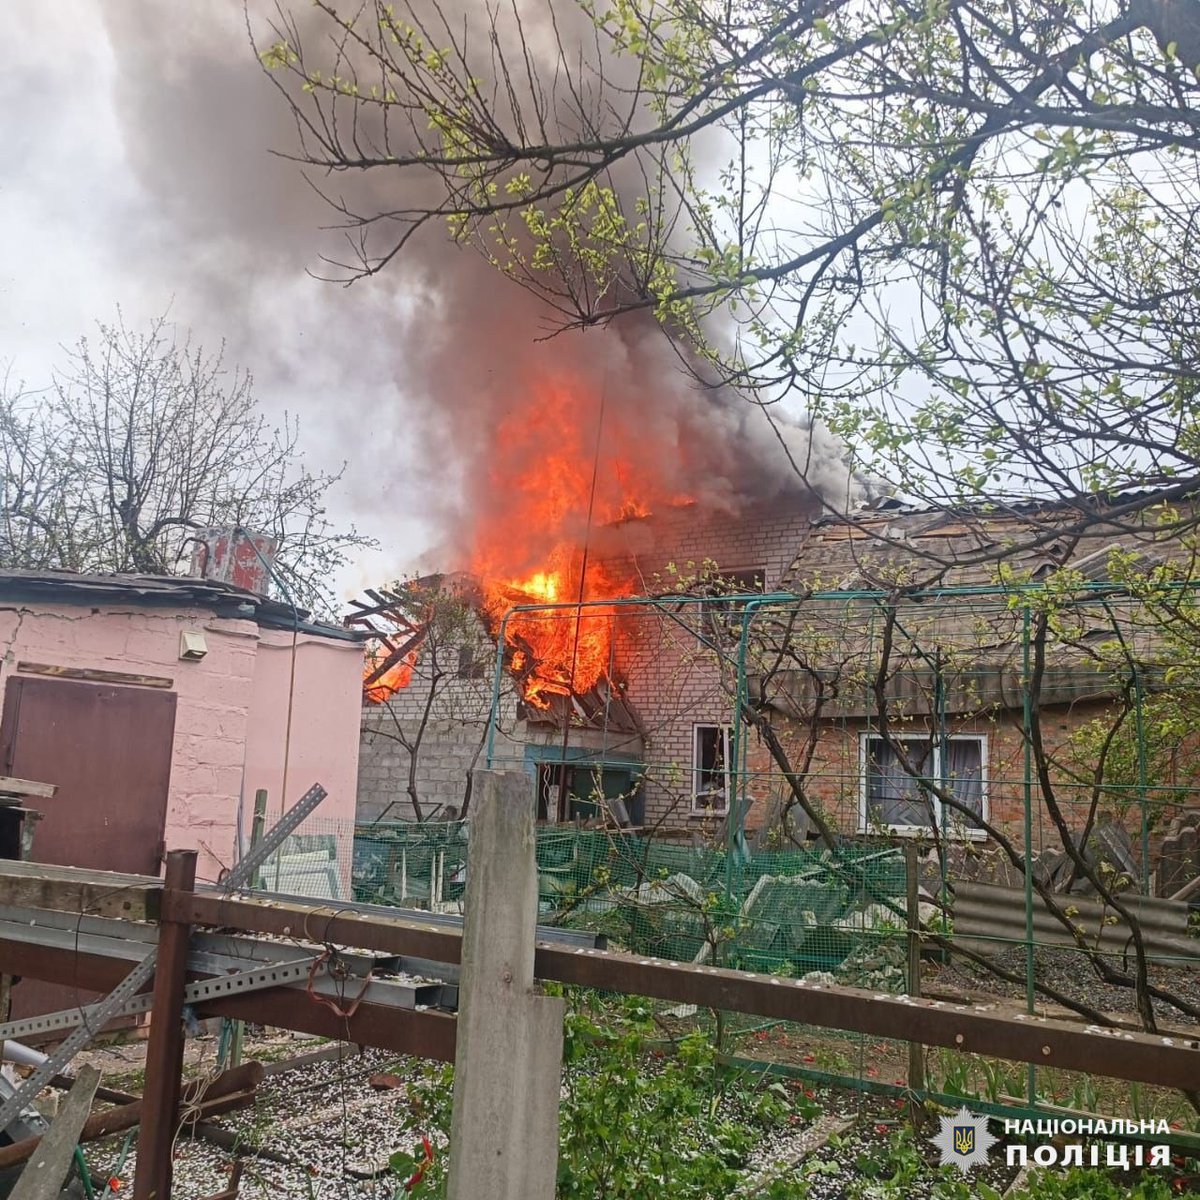 3 bambini e un'altra persona sono rimasti feriti a seguito dell'attacco aereo russo a Derhachi, nella regione di Kharkiv